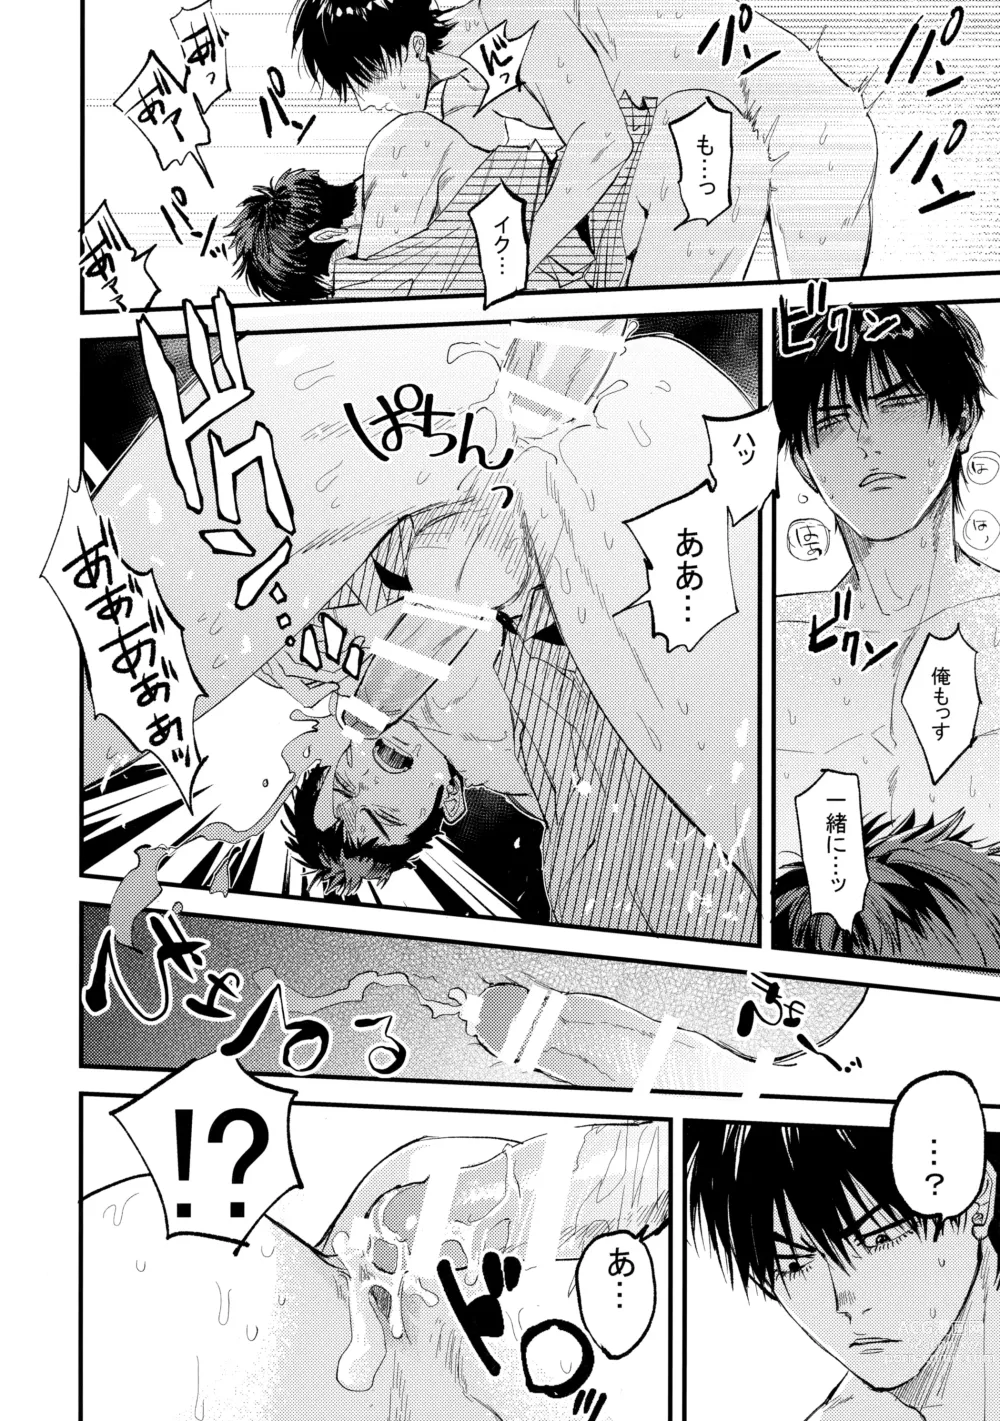 Page 53 of doujinshi Hajimete no,